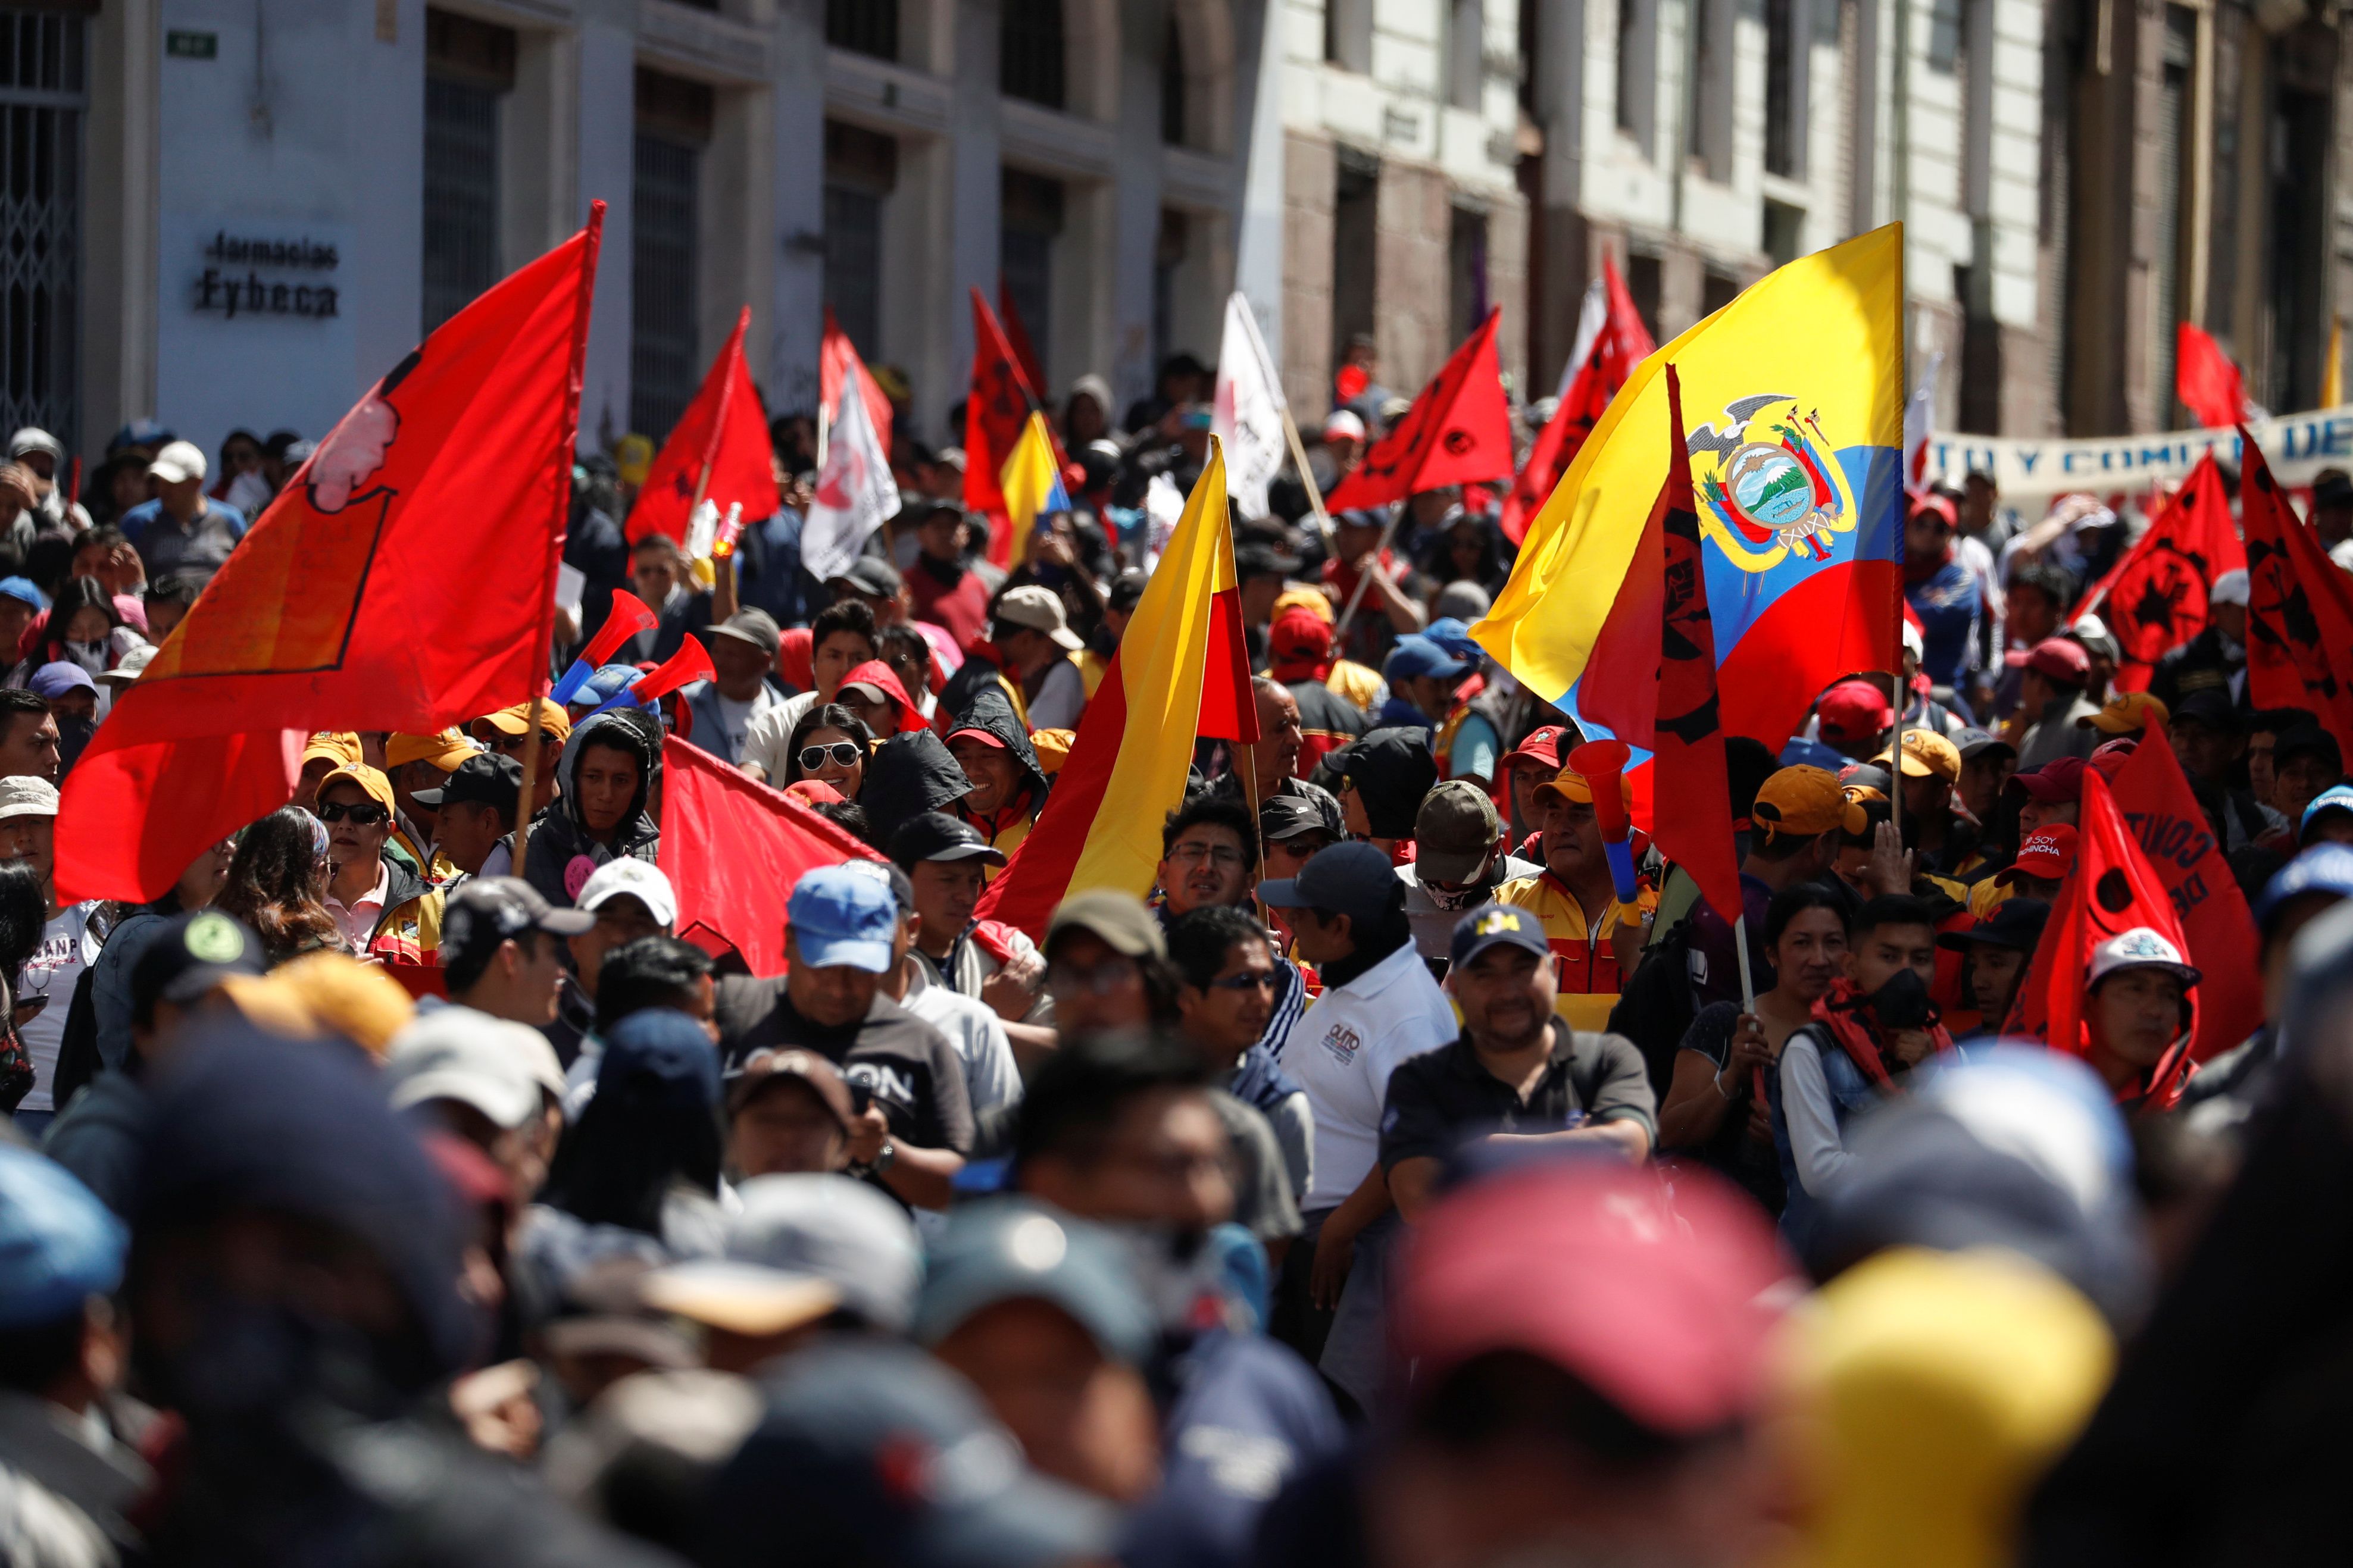 La alcaldesa de Guayaquil convocó también una marcha en la provincia para tratar de impedir el acceso de los manifestantes indígenas.